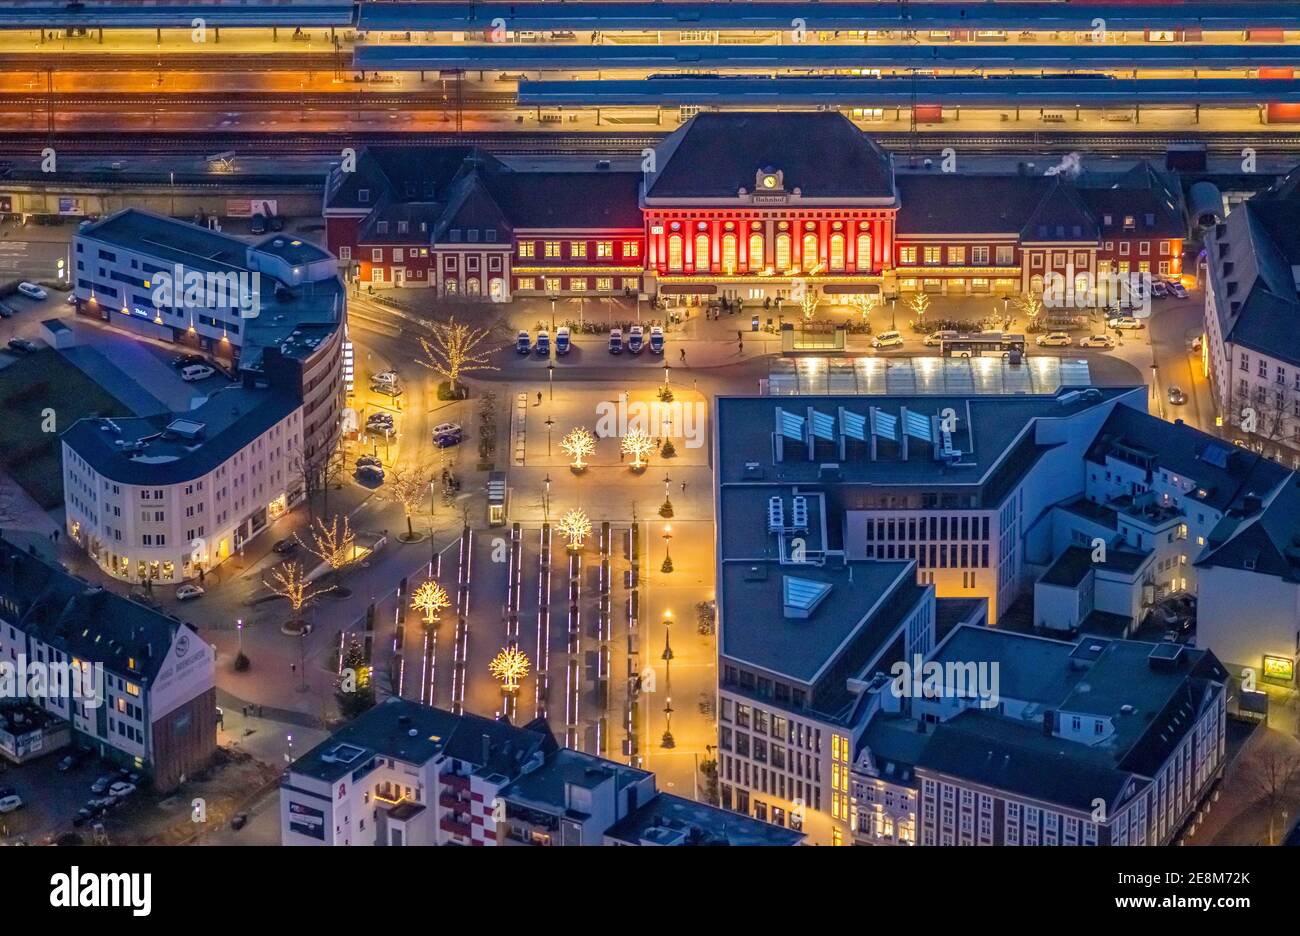 Vue aérienne, vue de nuit de la gare centrale de Hamm, parvis de la gare, bibliothèque de Hamm, Platz der Deutschen Einheit, Bahnhofstraße, Neue Bahnhofstraße,Herlit Banque D'Images